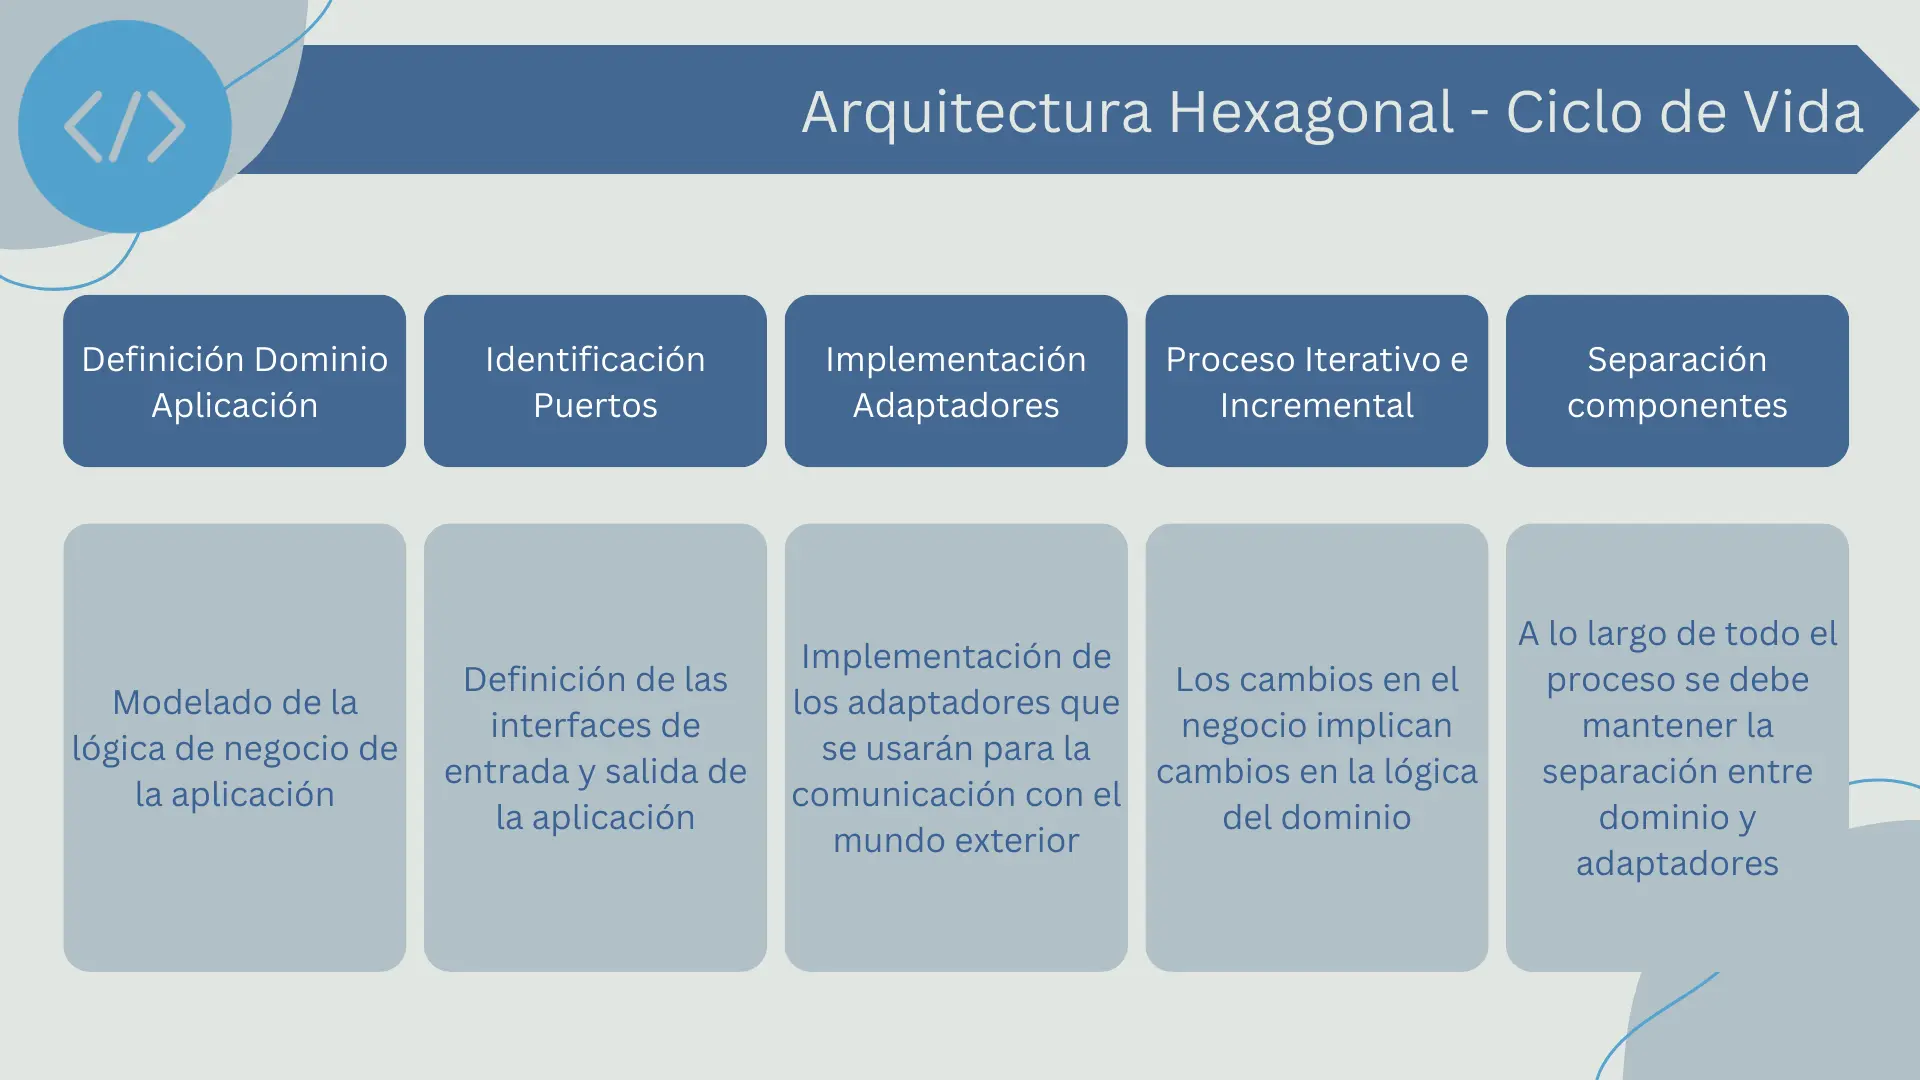 Ciclo de vida en la arquitectura hexagonal